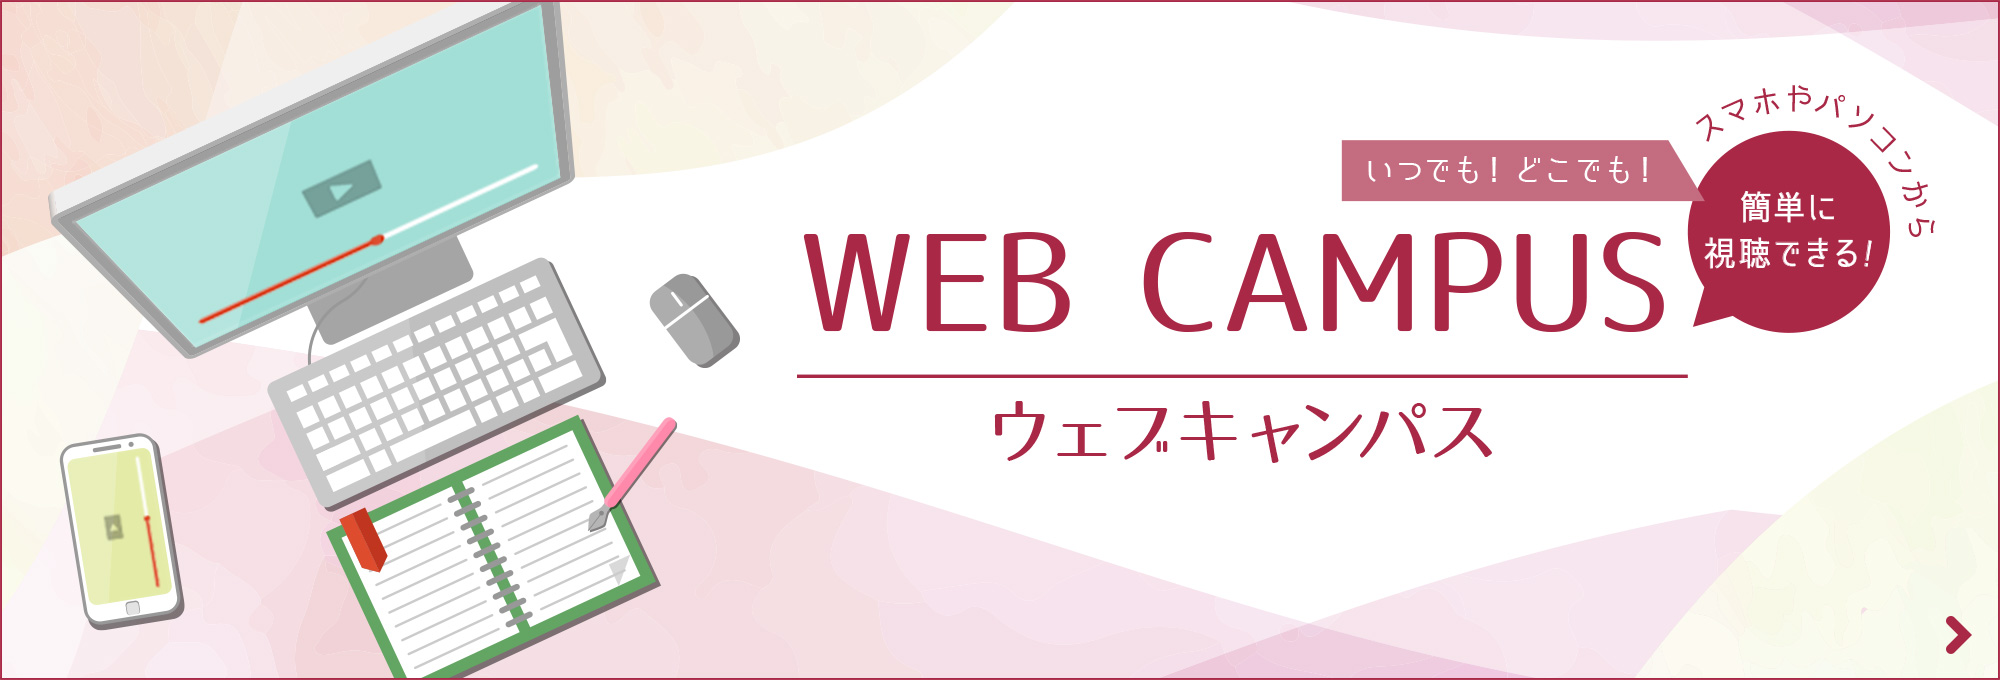 WEB CAMPUS